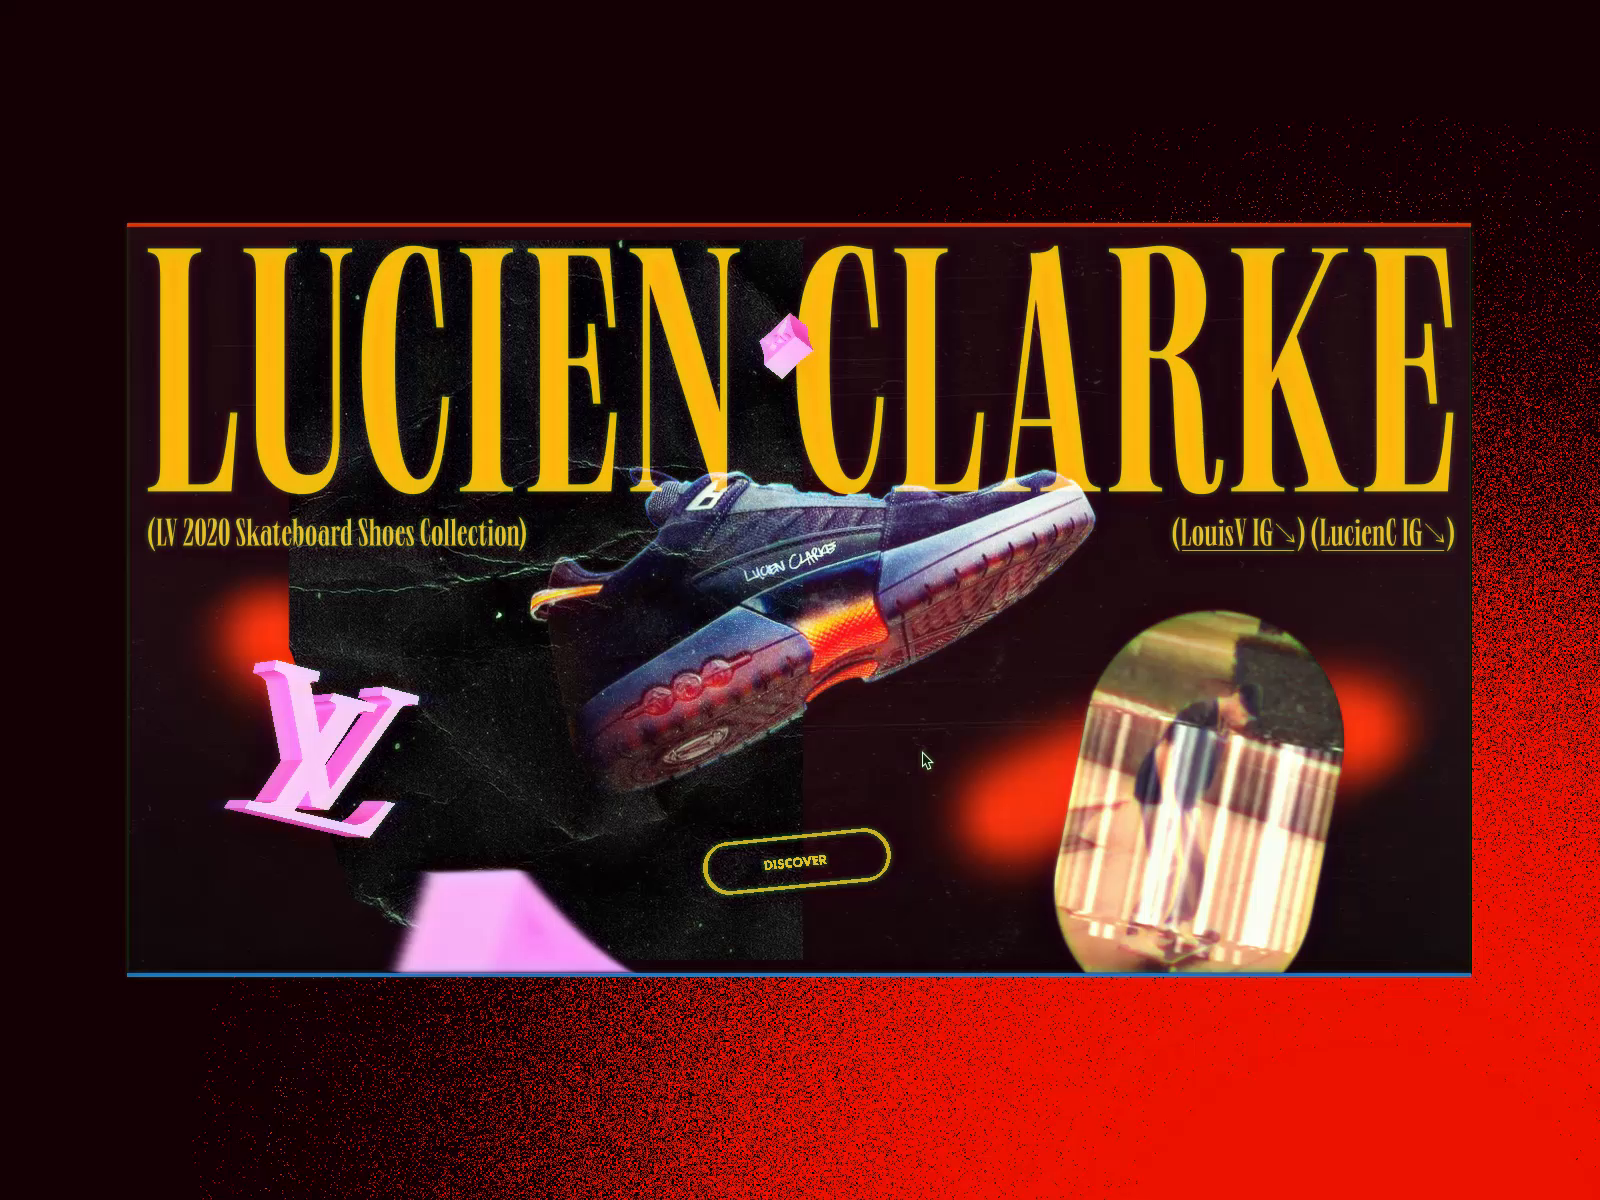 Lucien Clarke on LV